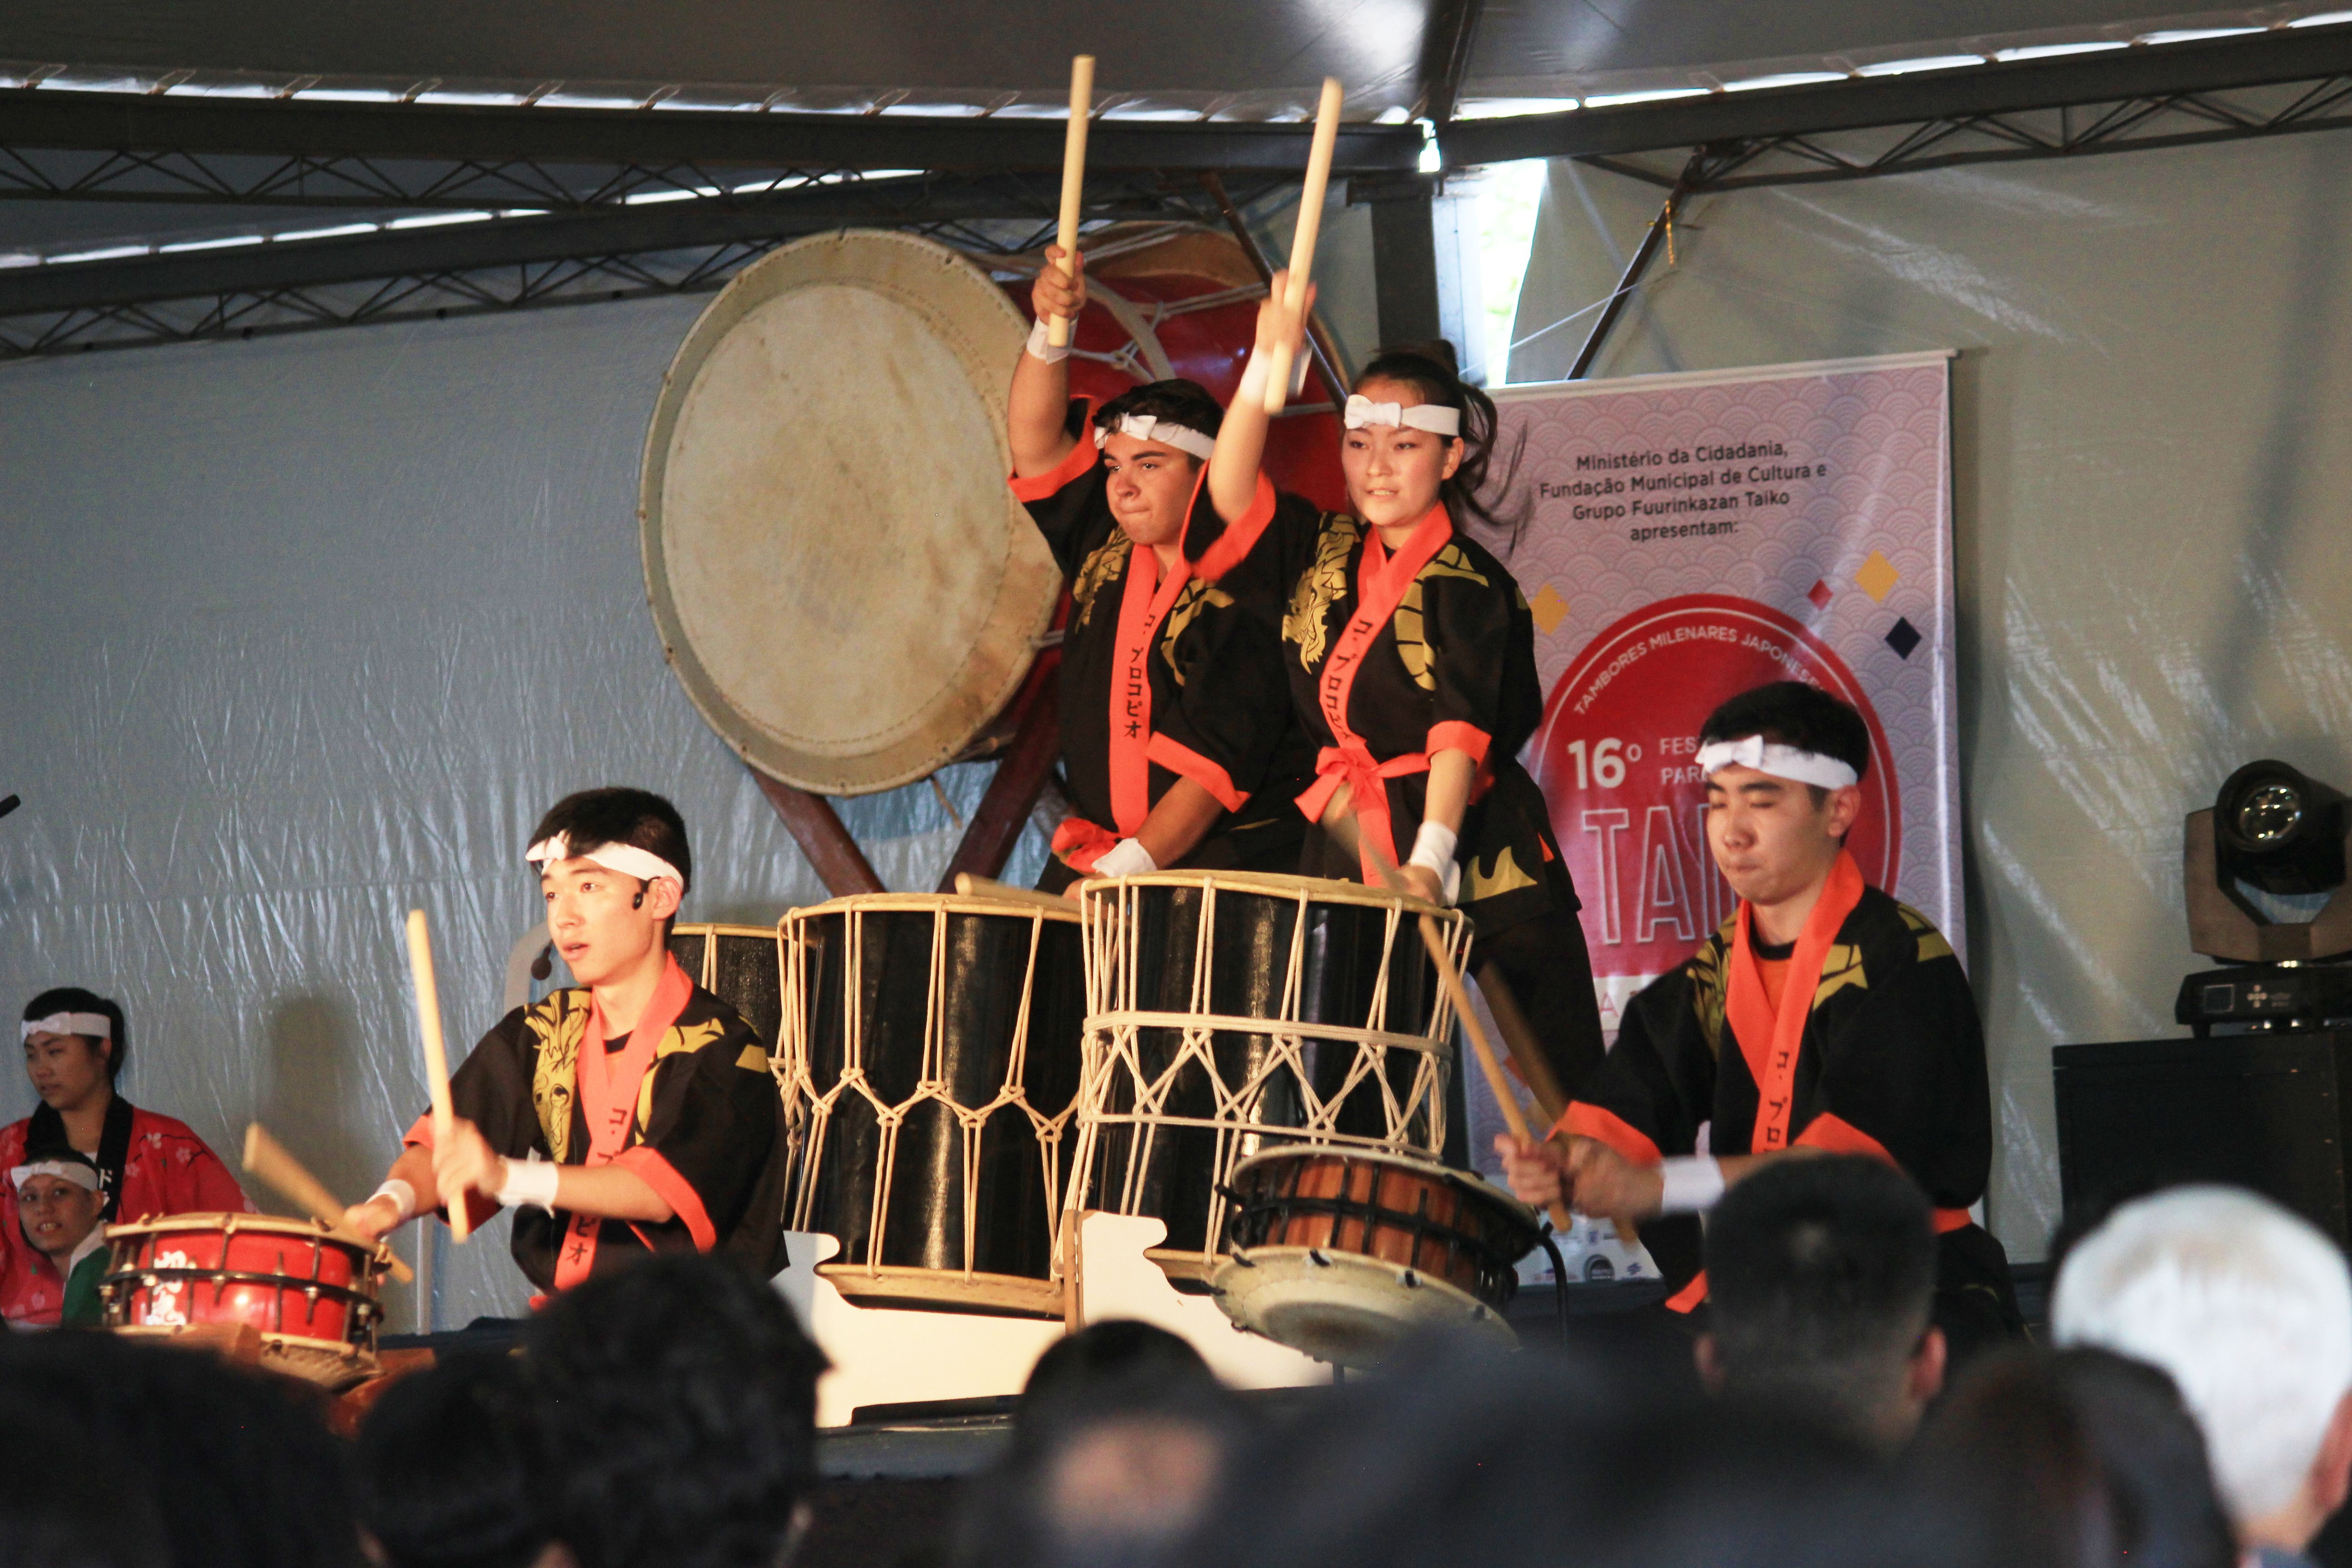 Festival Paranaense de Taiko é sucesso em Ponta Grossa